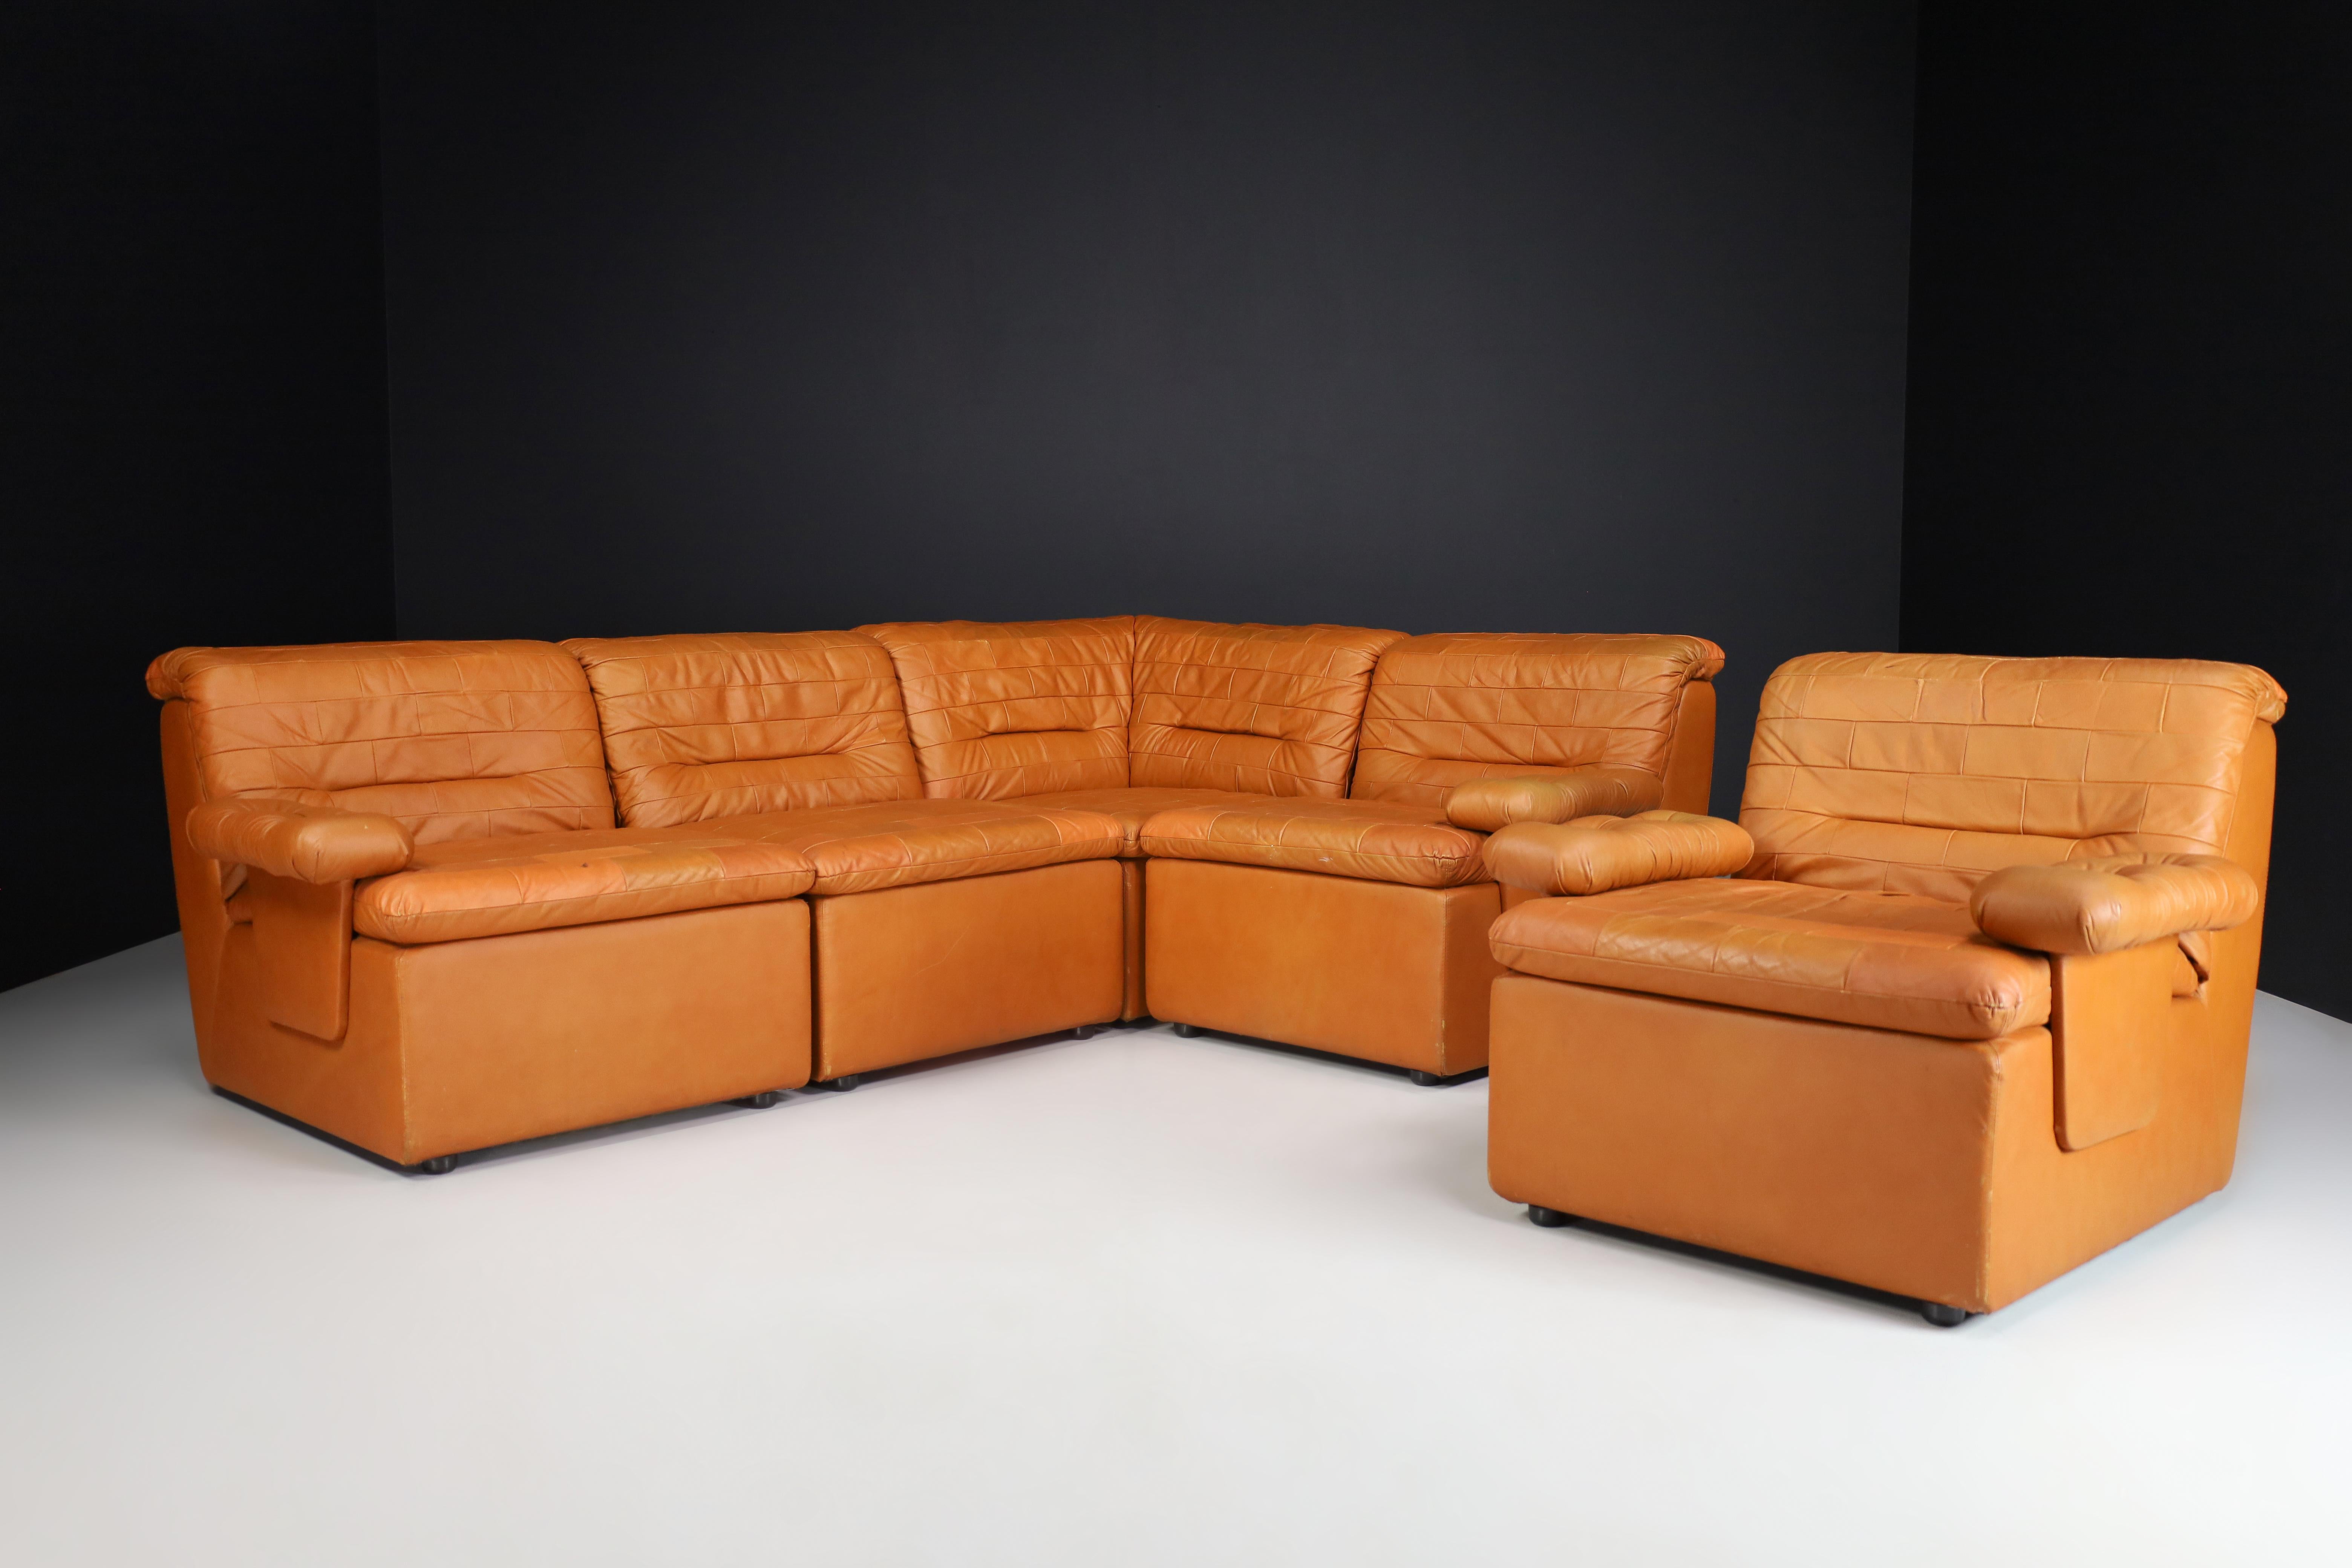 Mid-Century Modern Leder Patchwork Lounge Sofa/Wohnzimmer Set/5, Schweiz 1960er Jahre.

Mid-Century Modern Leder Patchwork Lounge Sofa/Wohnzimmer-Set hergestellt und entworfen in der Schweiz 1960er Jahre. Es ist in schönem Vintage-Zustand, mit